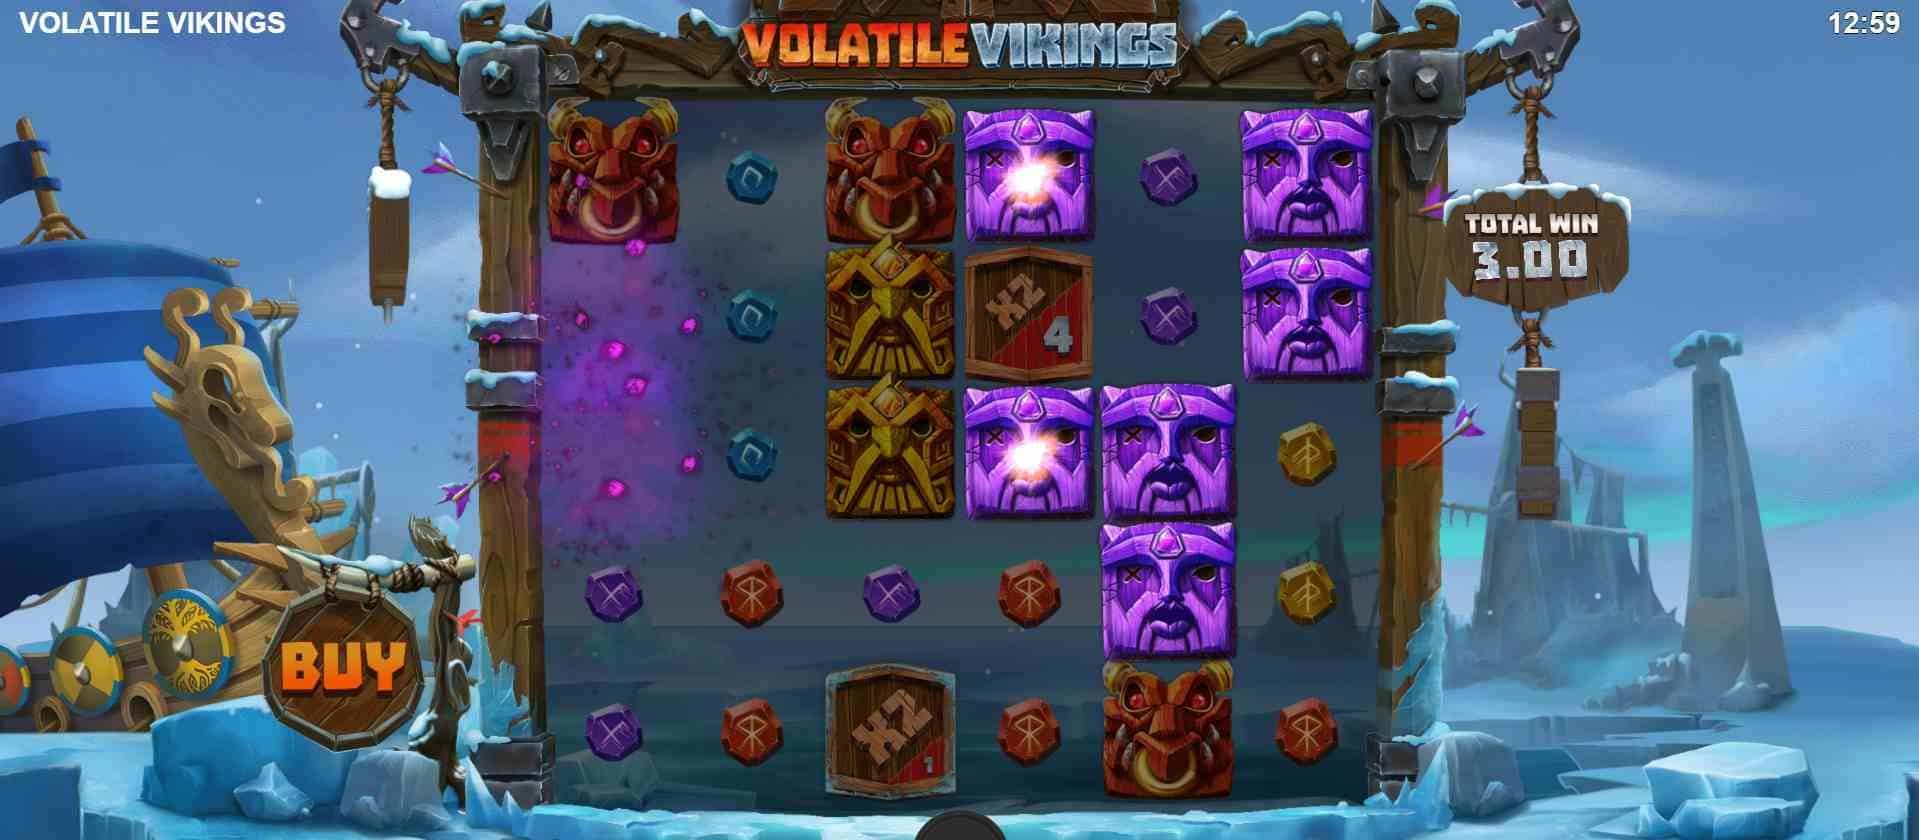 Volatile Vikings Base Game